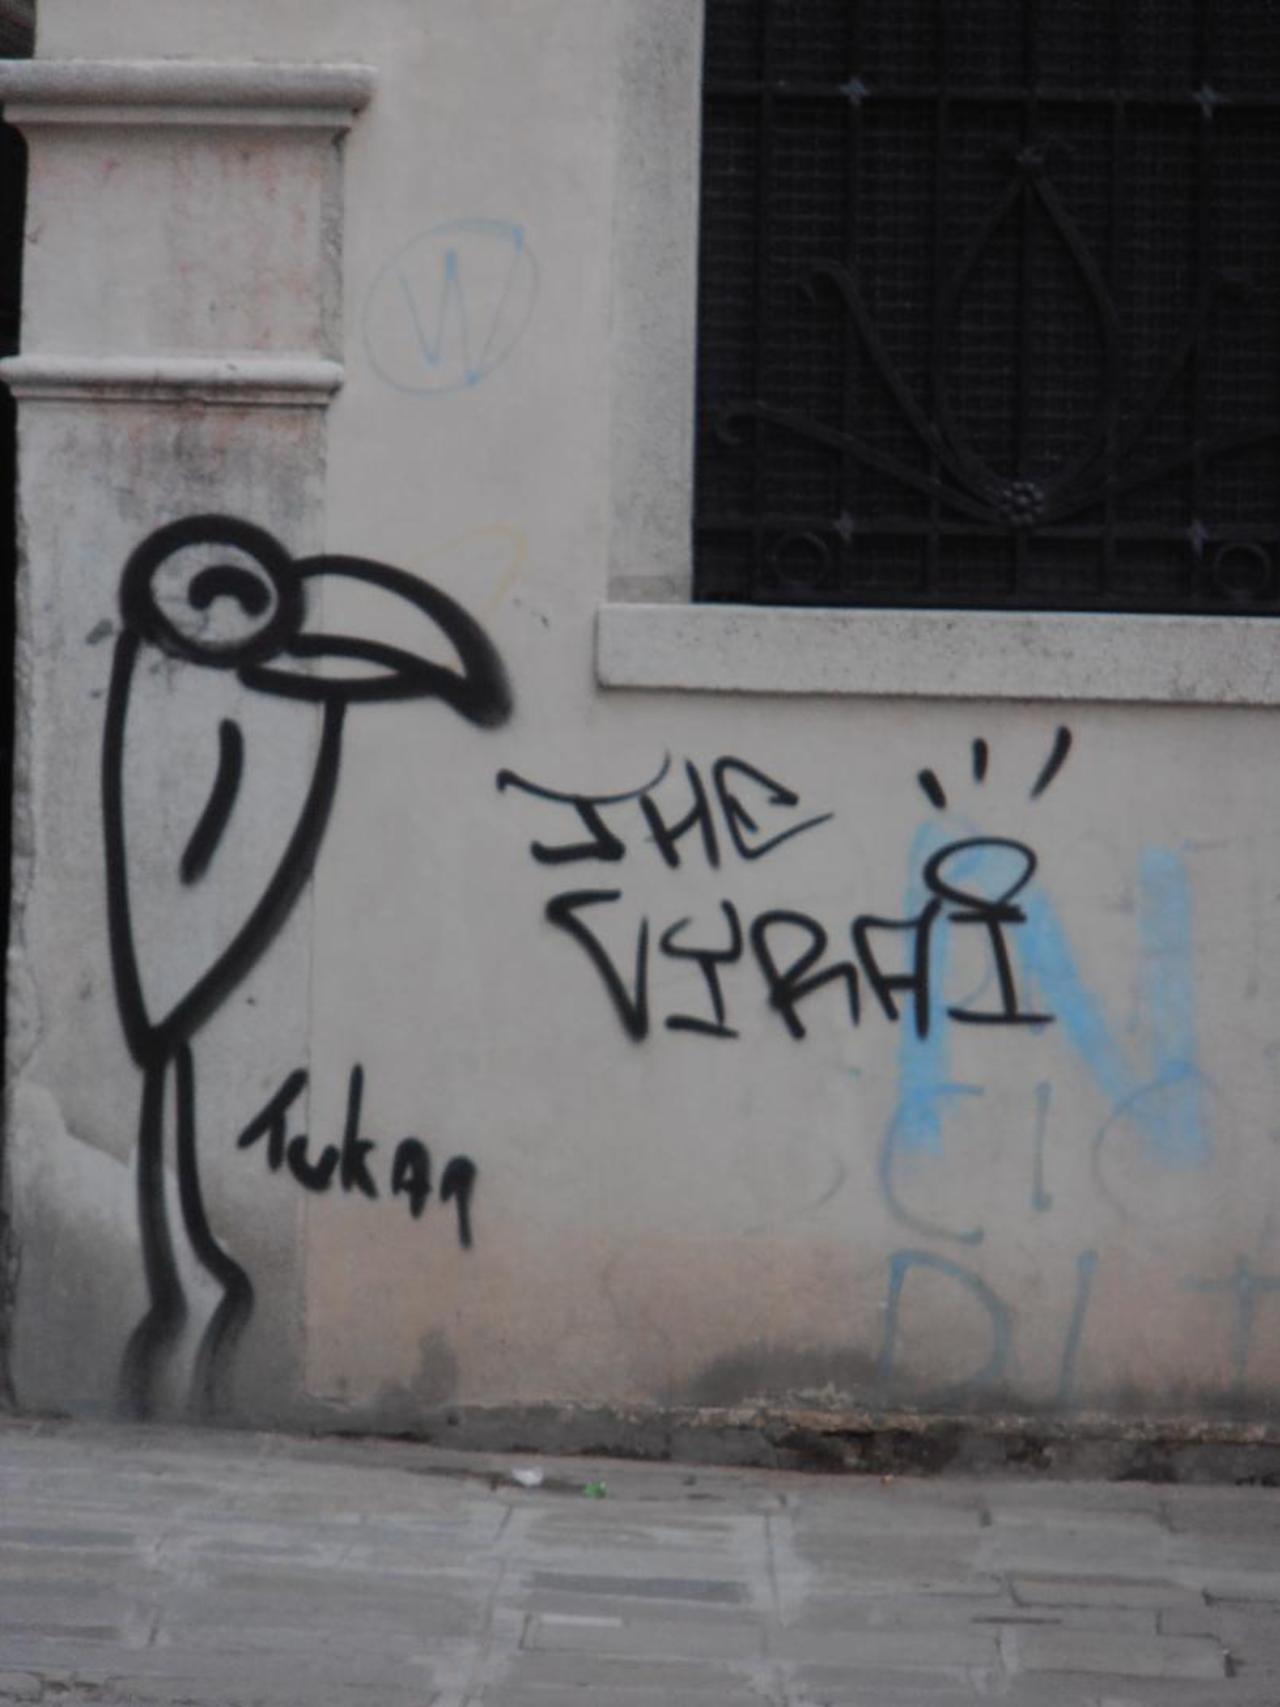 Killer Tukan #graffiti #streetart #veniceitaly https://t.co/g2z3YuqrlM